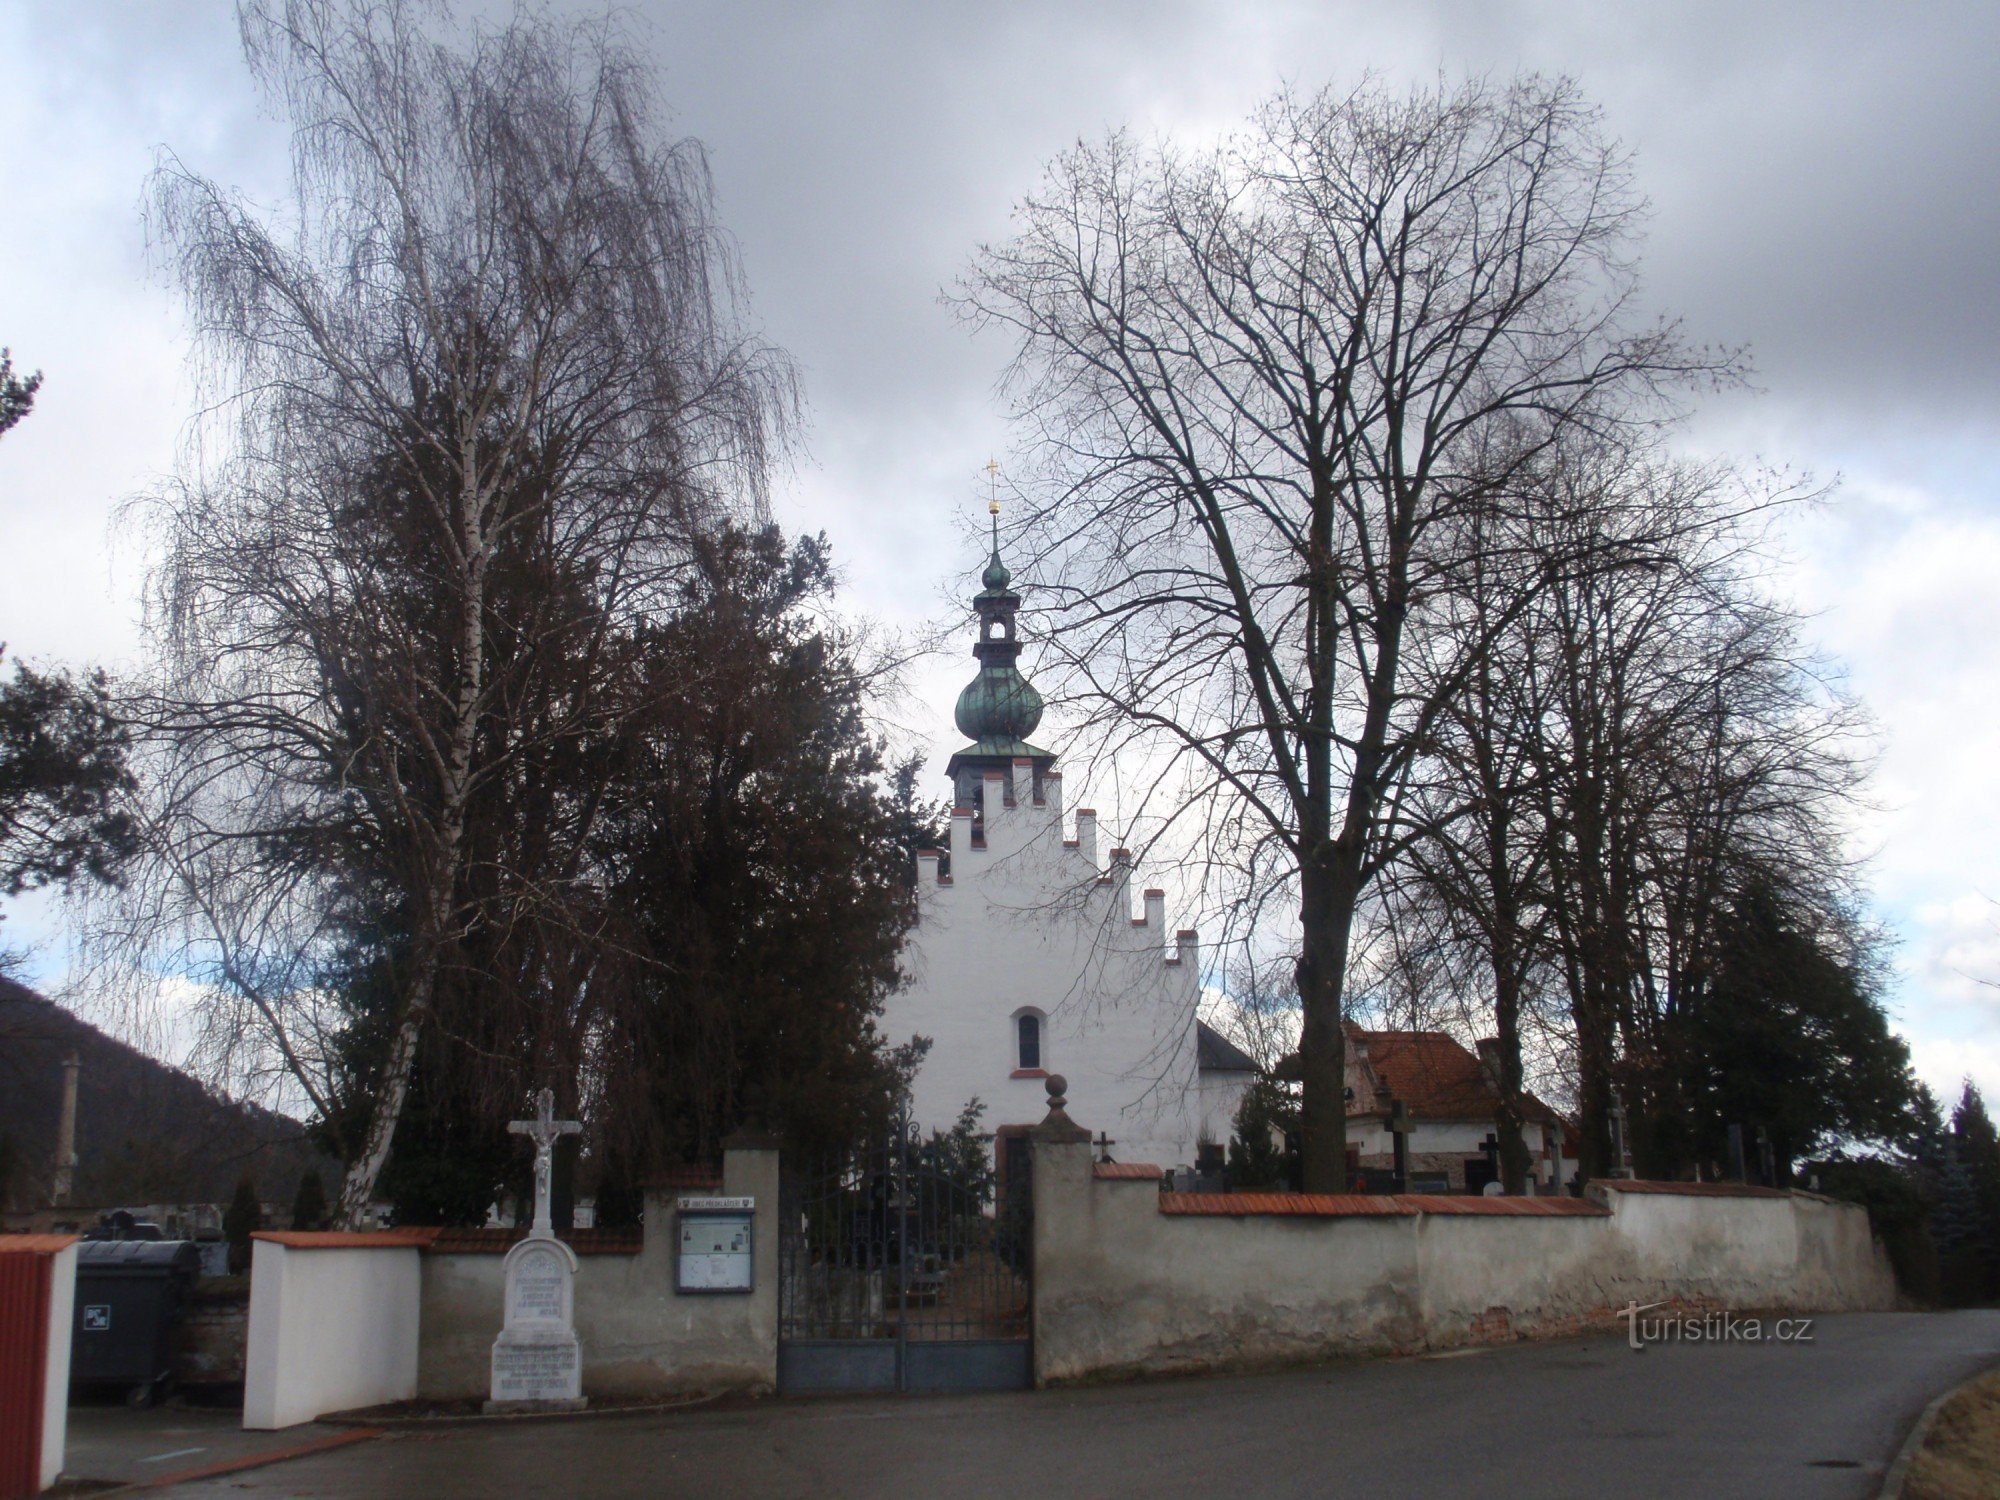 Pre-mănăstire lângă Tišnov - mici monumente